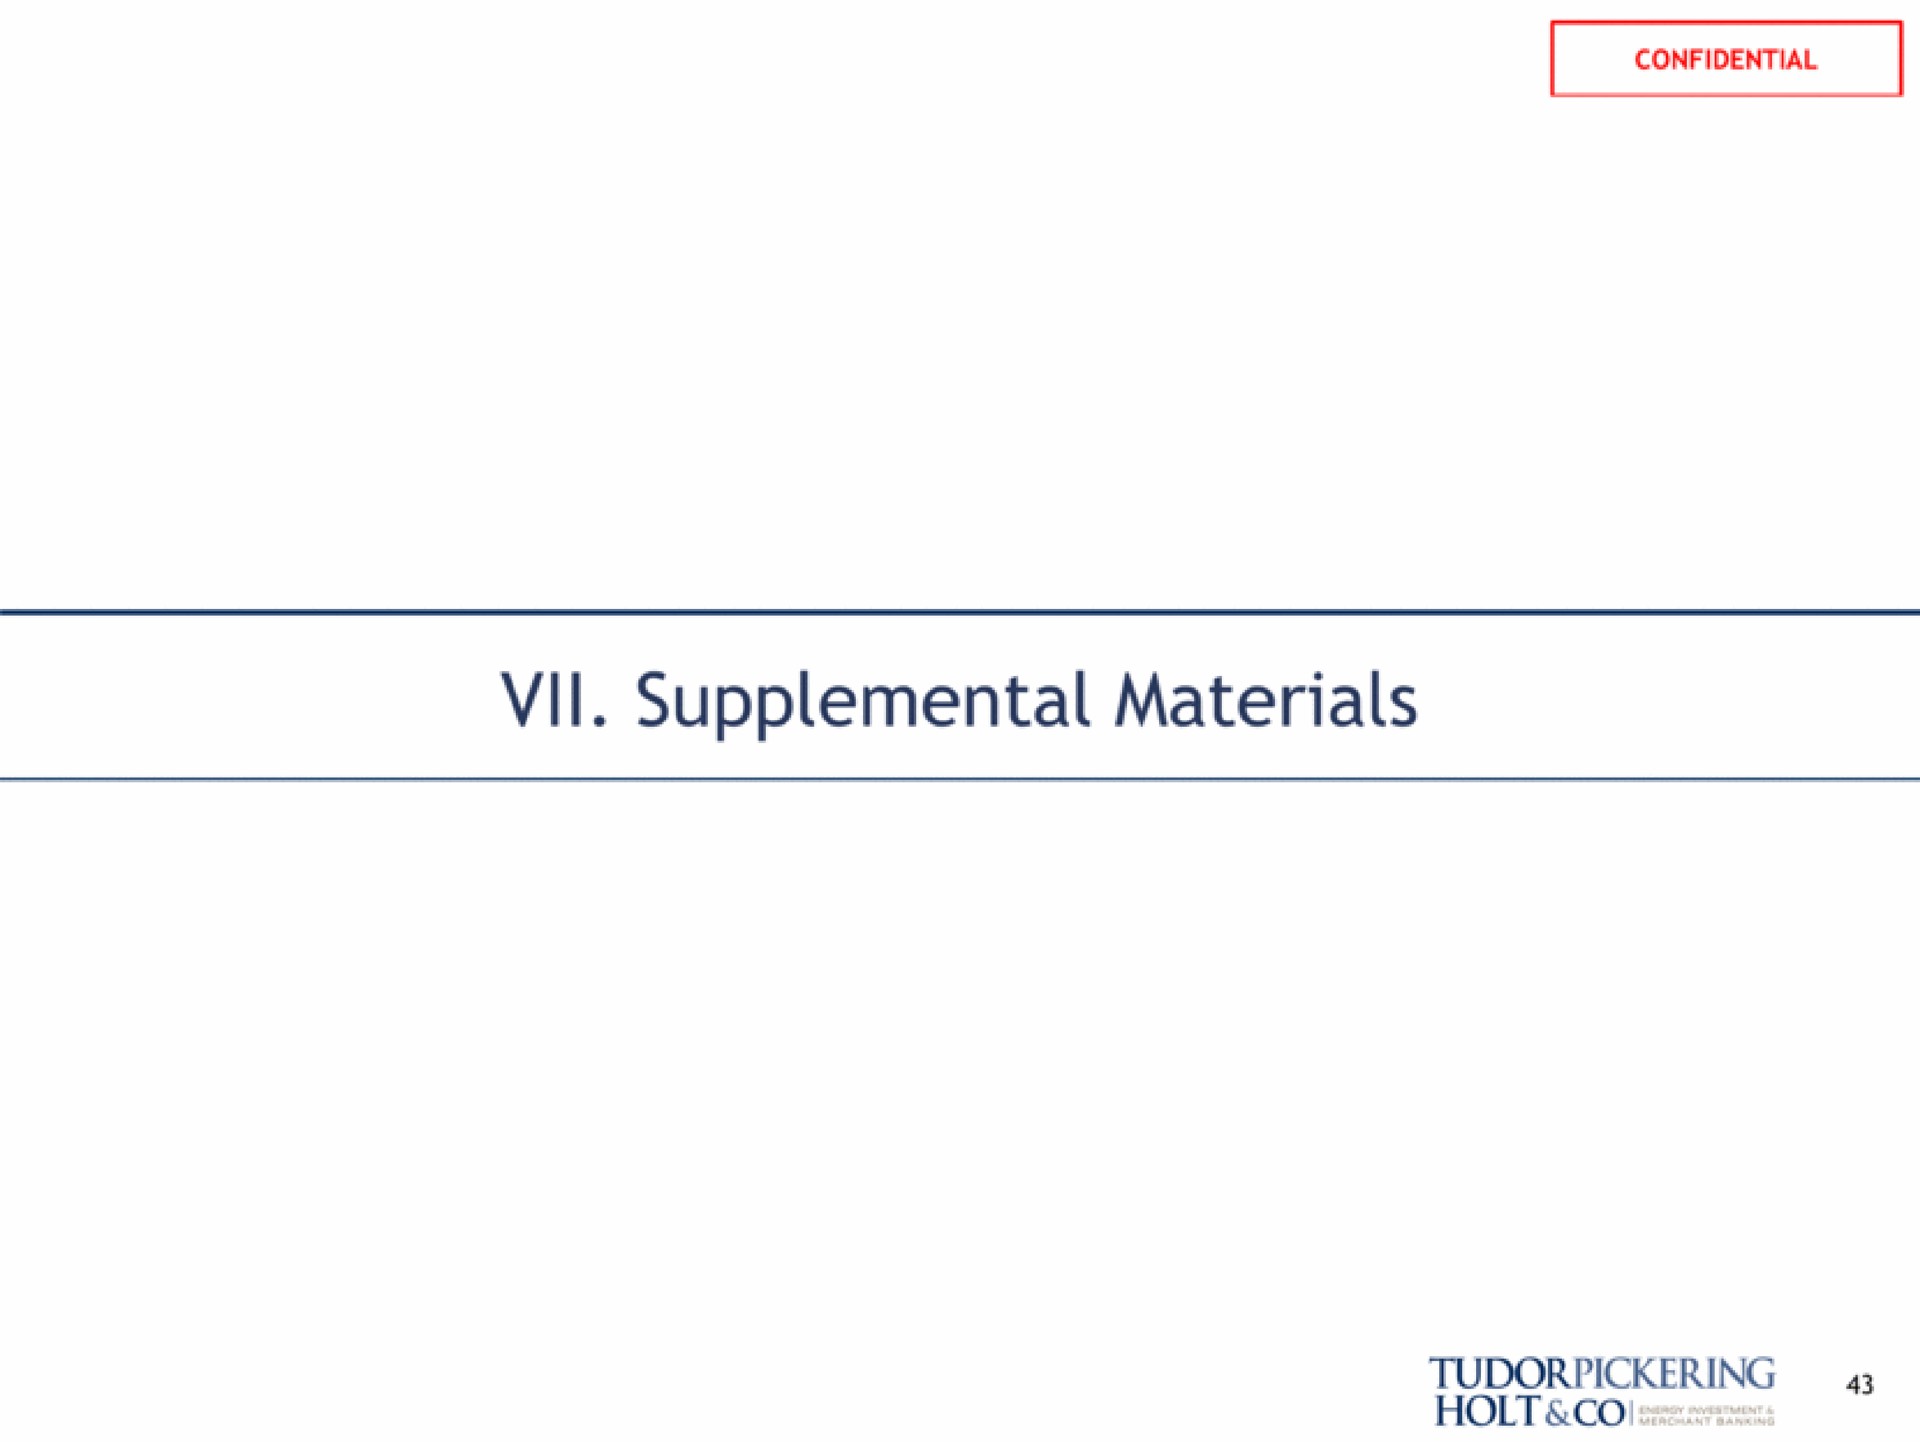 supplemental materials holt | Tudor, Pickering, Holt & Co